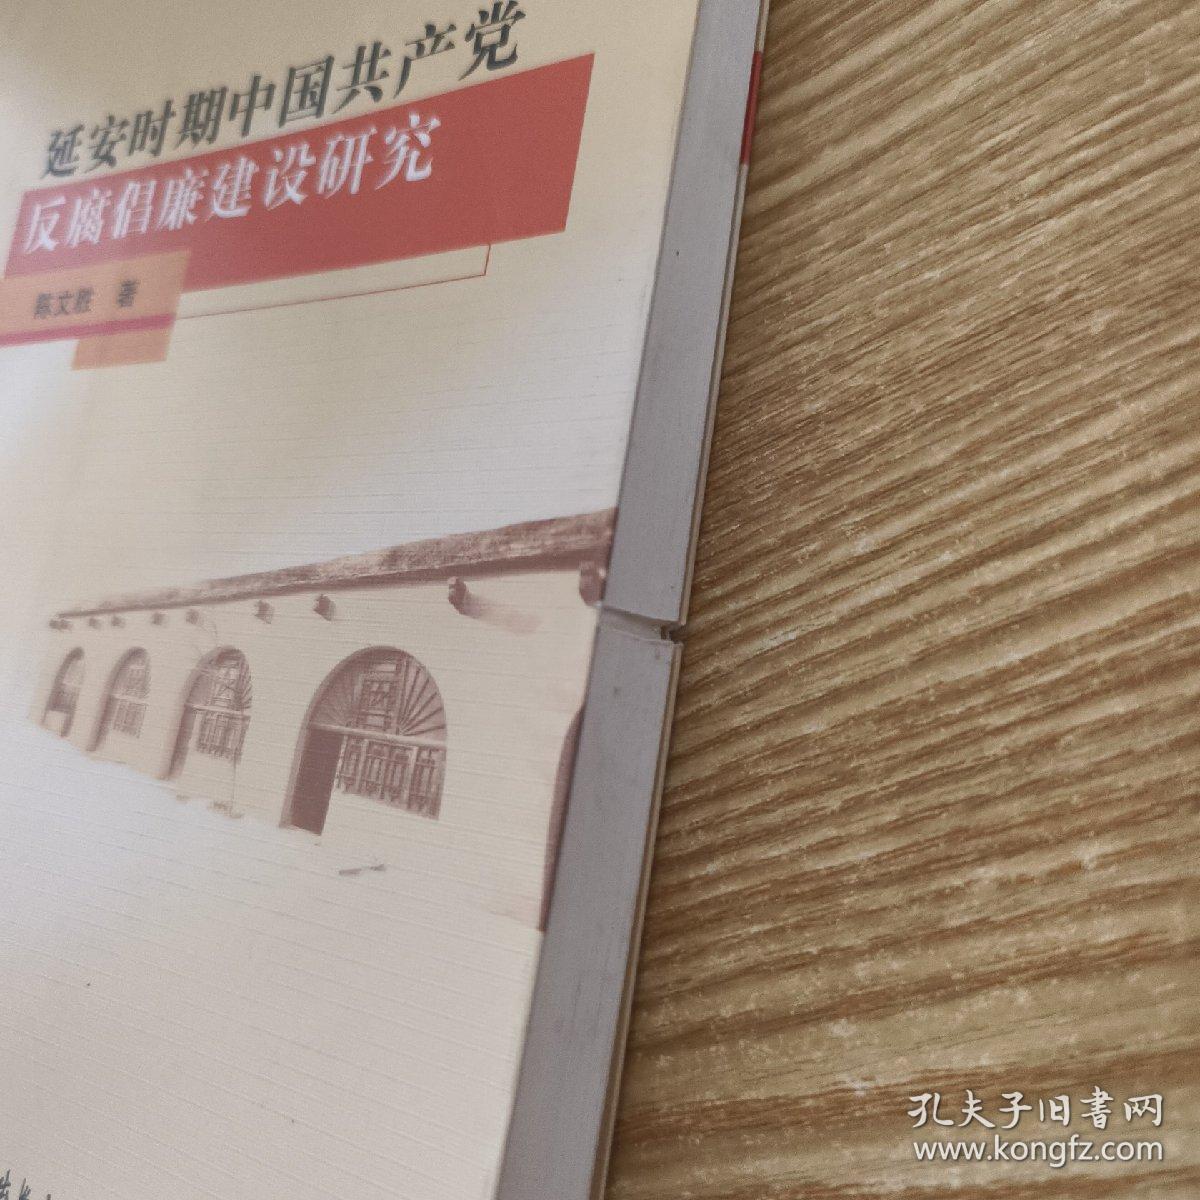 延安时期中国共产党反腐倡廉建设研究